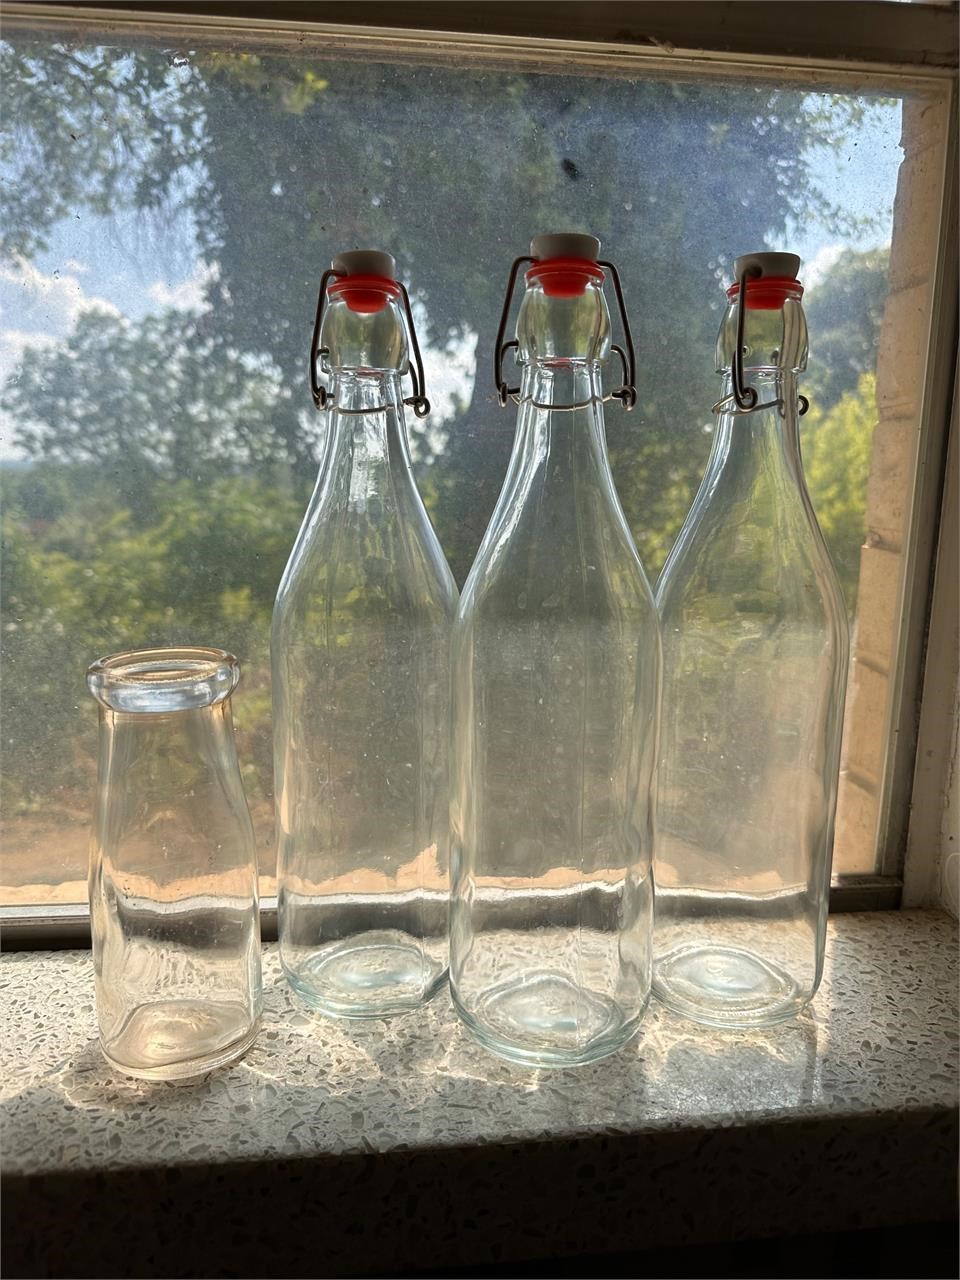 3 glass stopper bottles